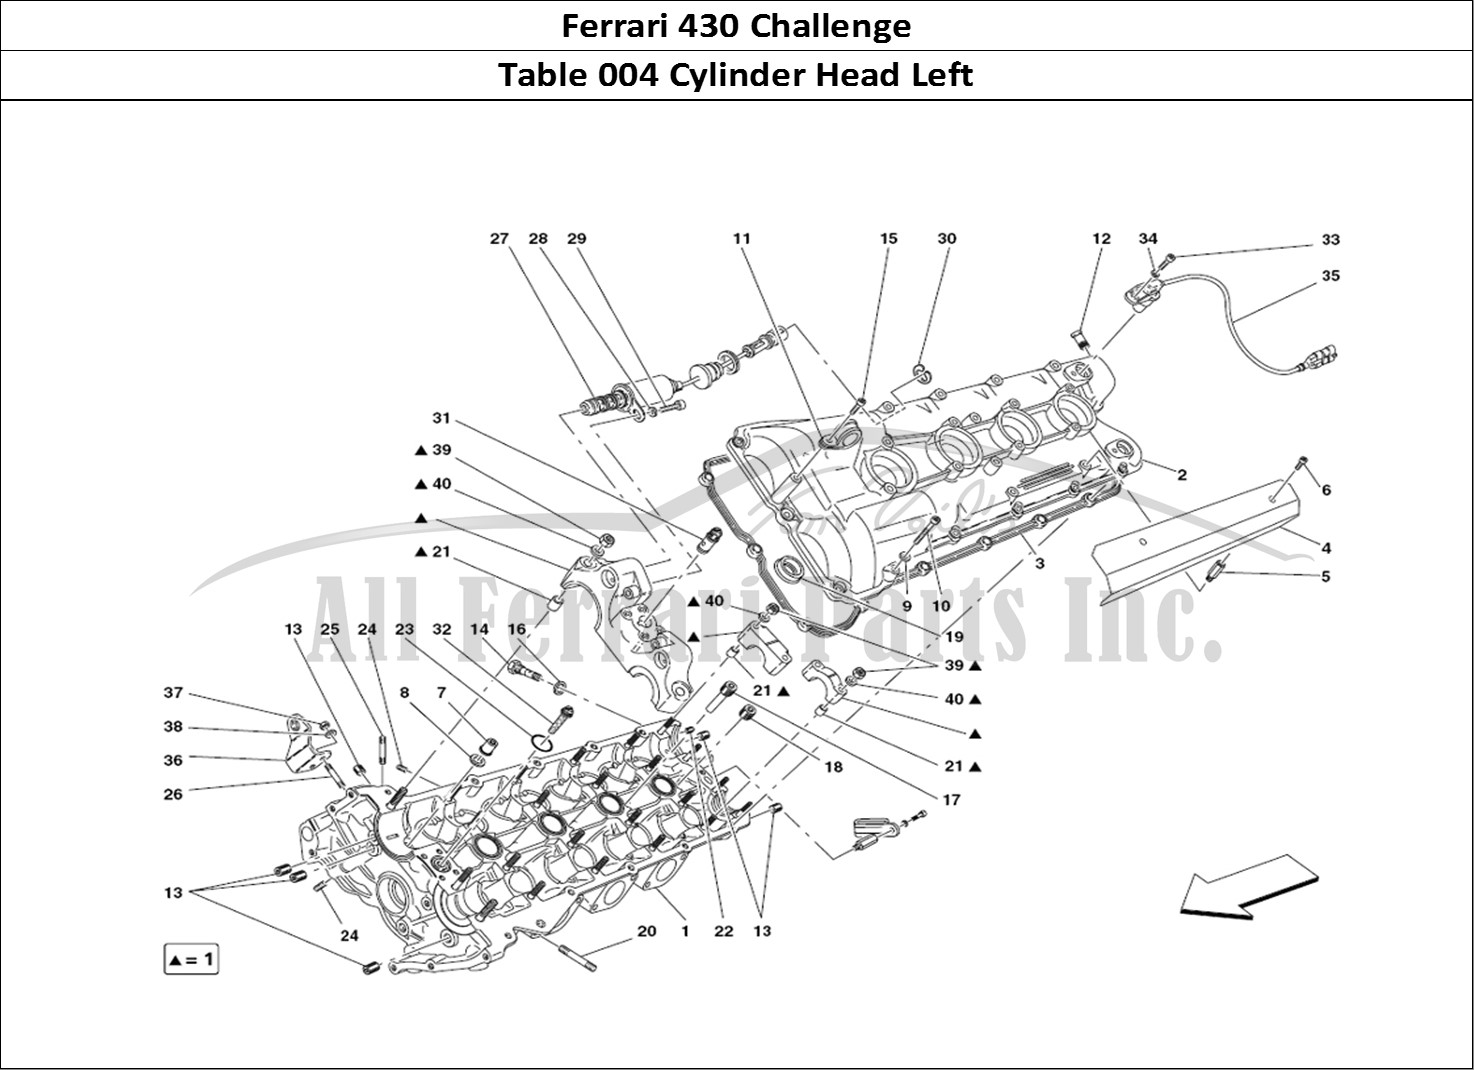 Ferrari Parts Ferrari 430 Challenge (2006) Page 004 LH Cylinder Head